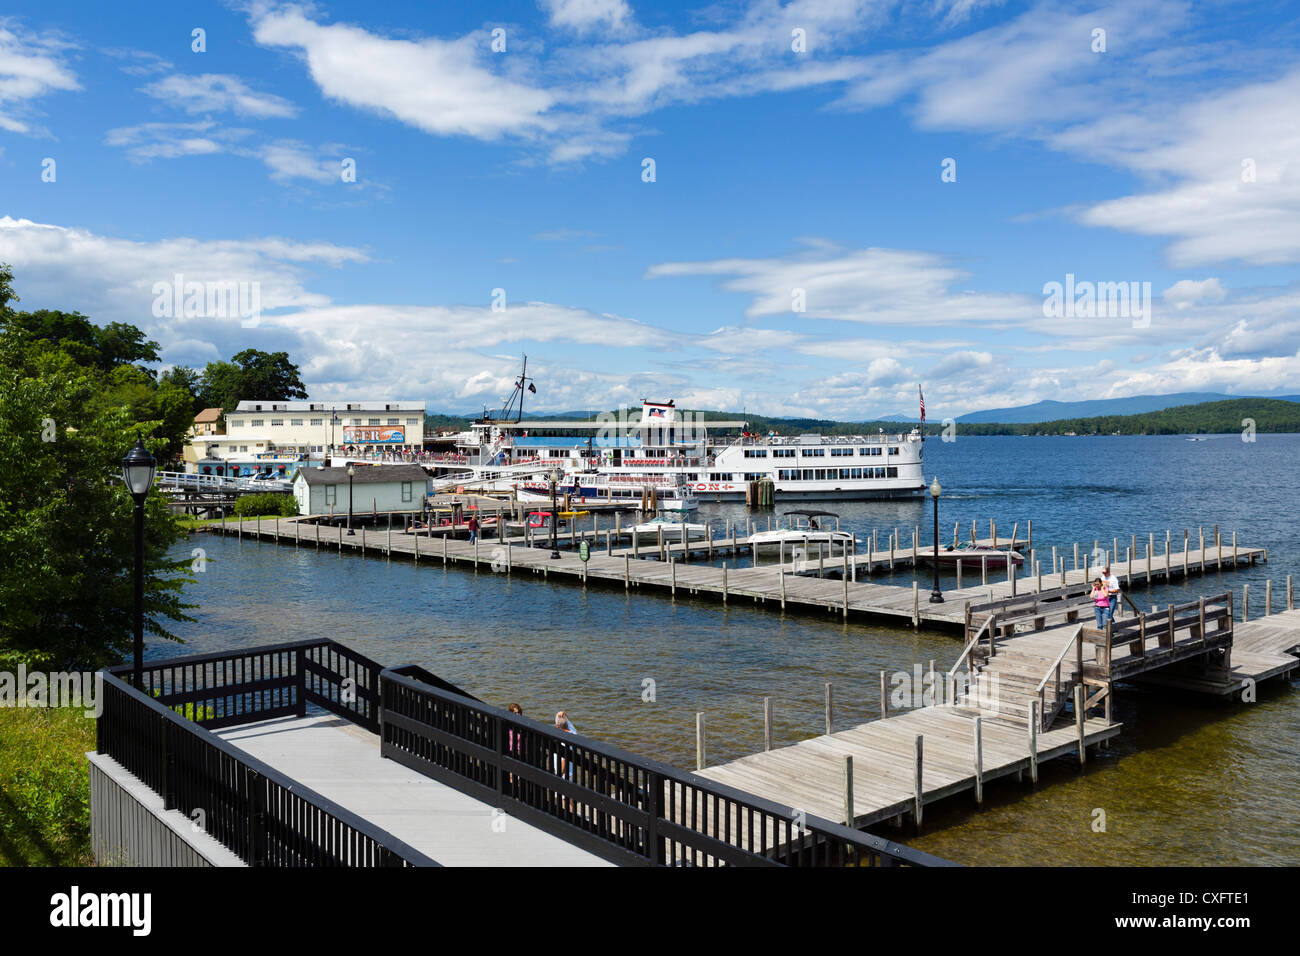 Dock di sbarramenti spiaggia sul lago Winnipesaukee con il M/S Mount Washington ormeggiata in background, Regione dei Laghi, New Hampshire, STATI UNITI D'AMERICA Foto Stock